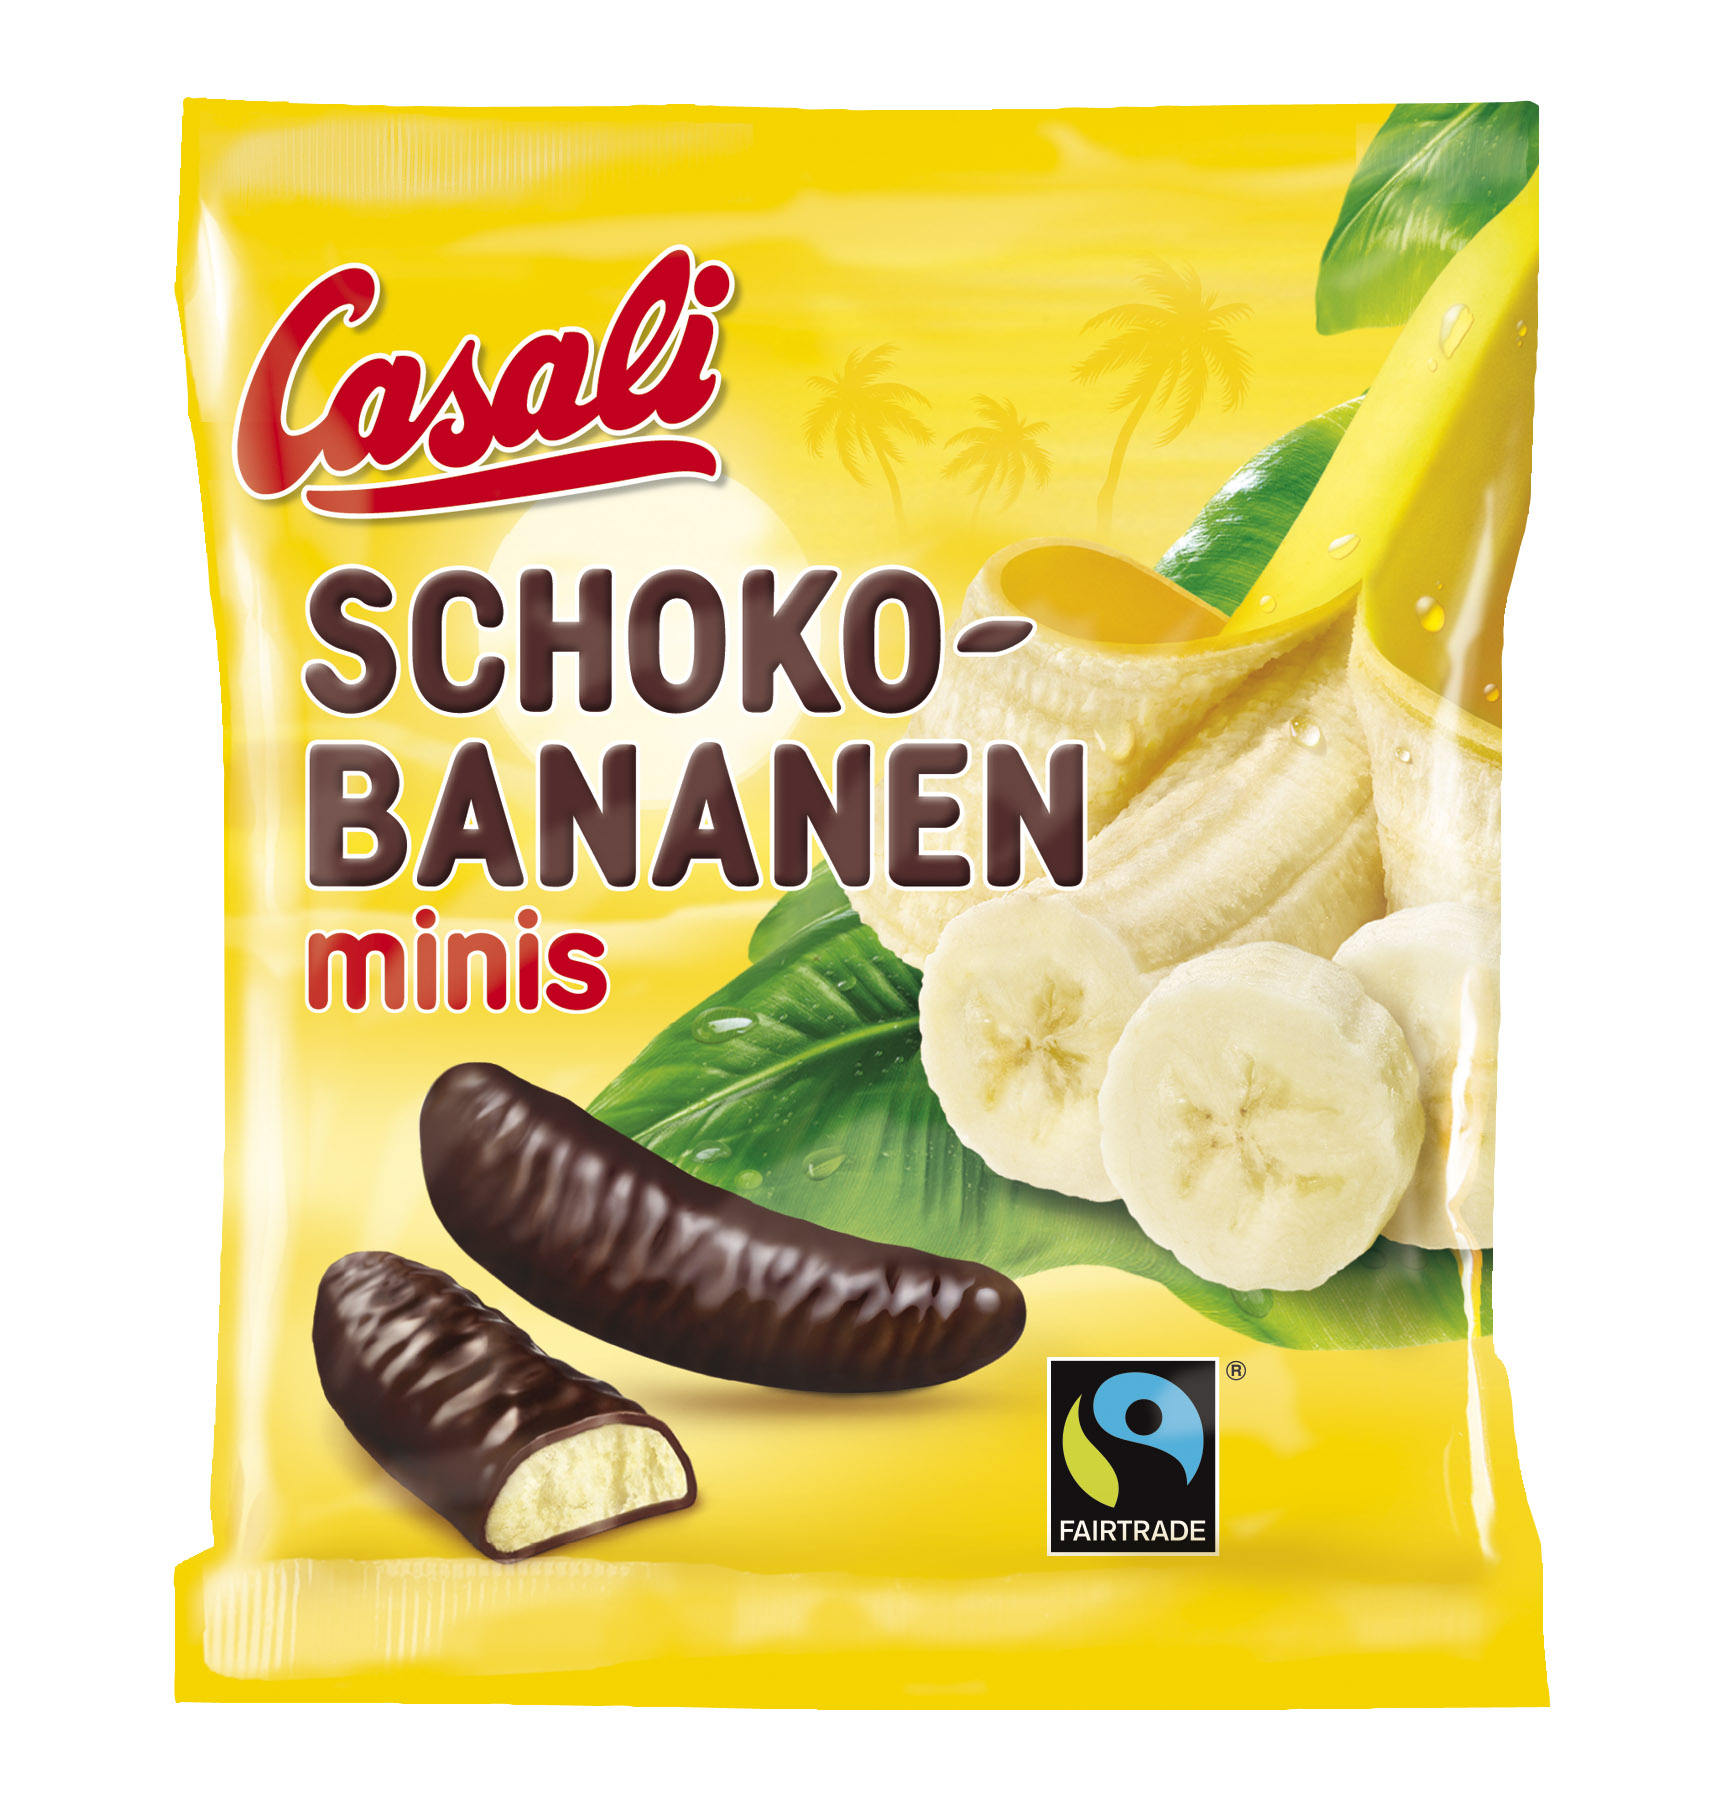 Schoko-Bananen mini 